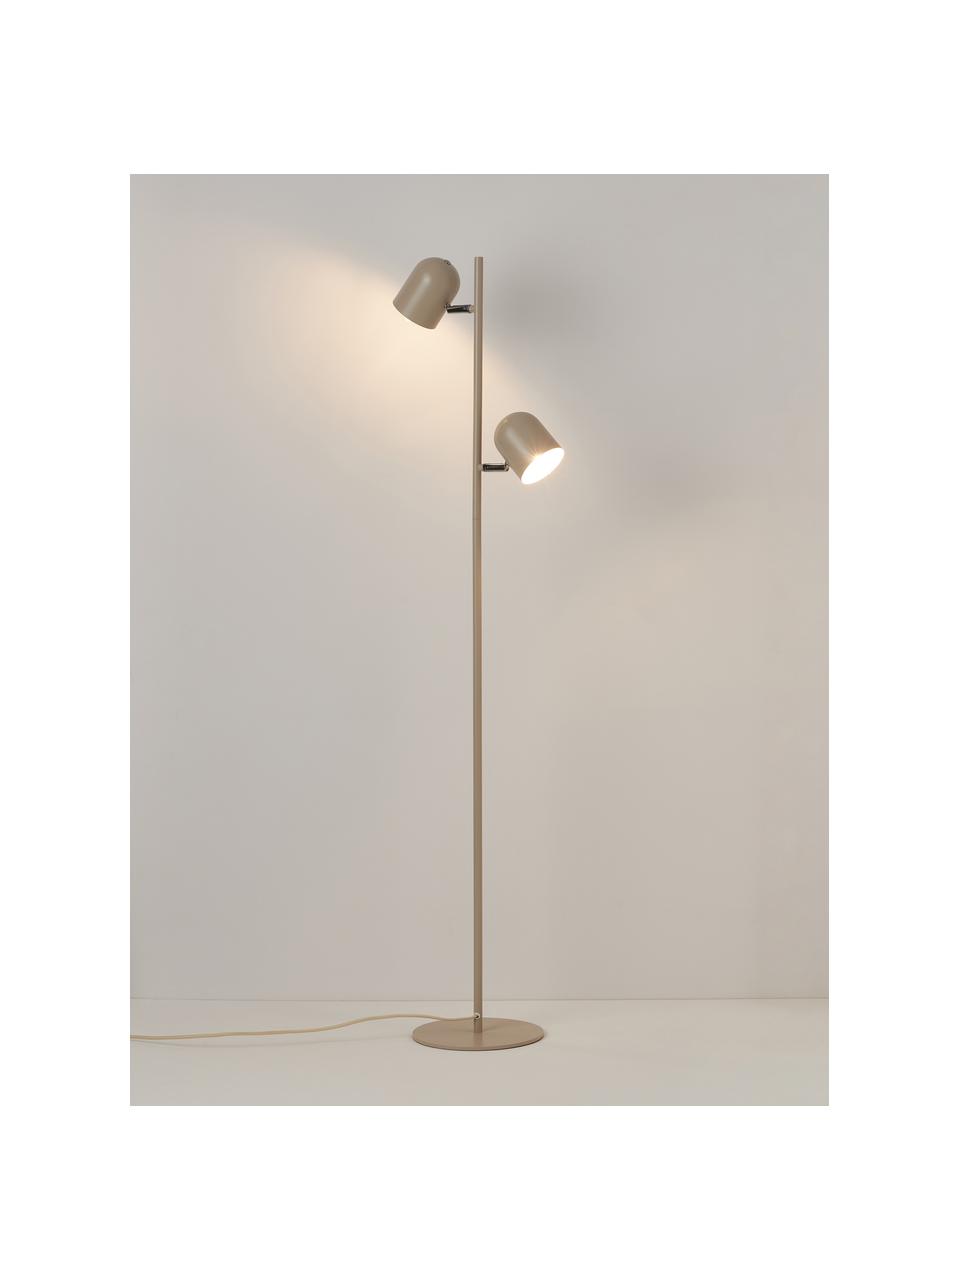 Metalen vloerlamp Almo, Lichtbeige, H 137 cm